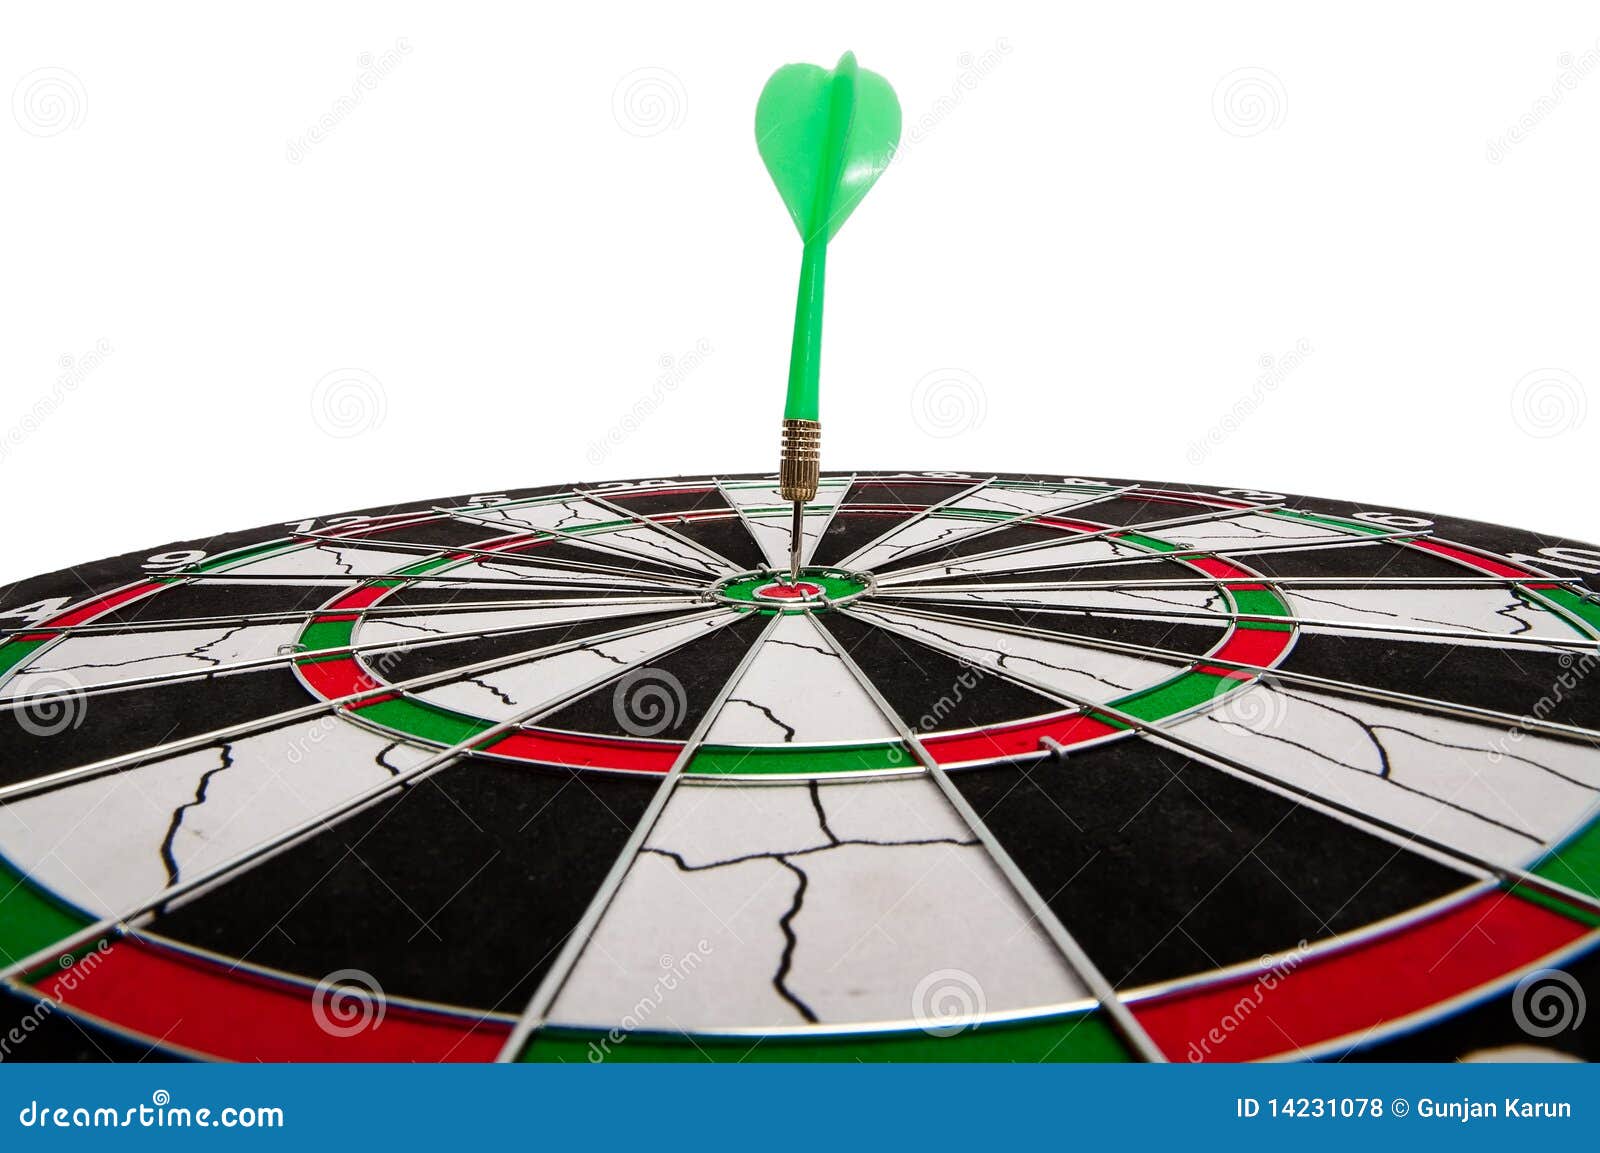 dart in bullseye of dartboard